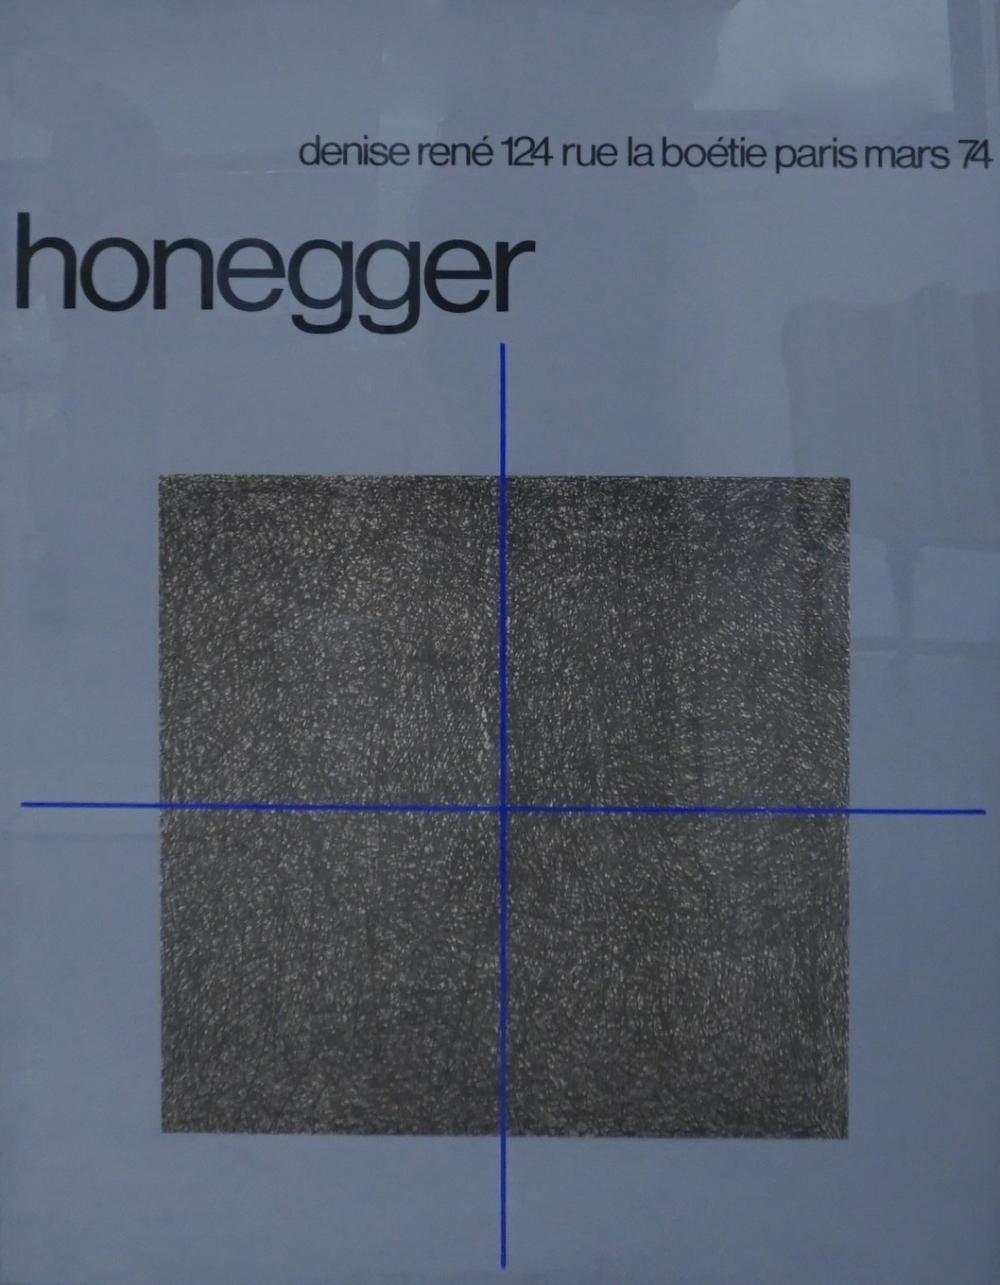 HONEGGER REPRODUCTION POSTER FRAME  32f751